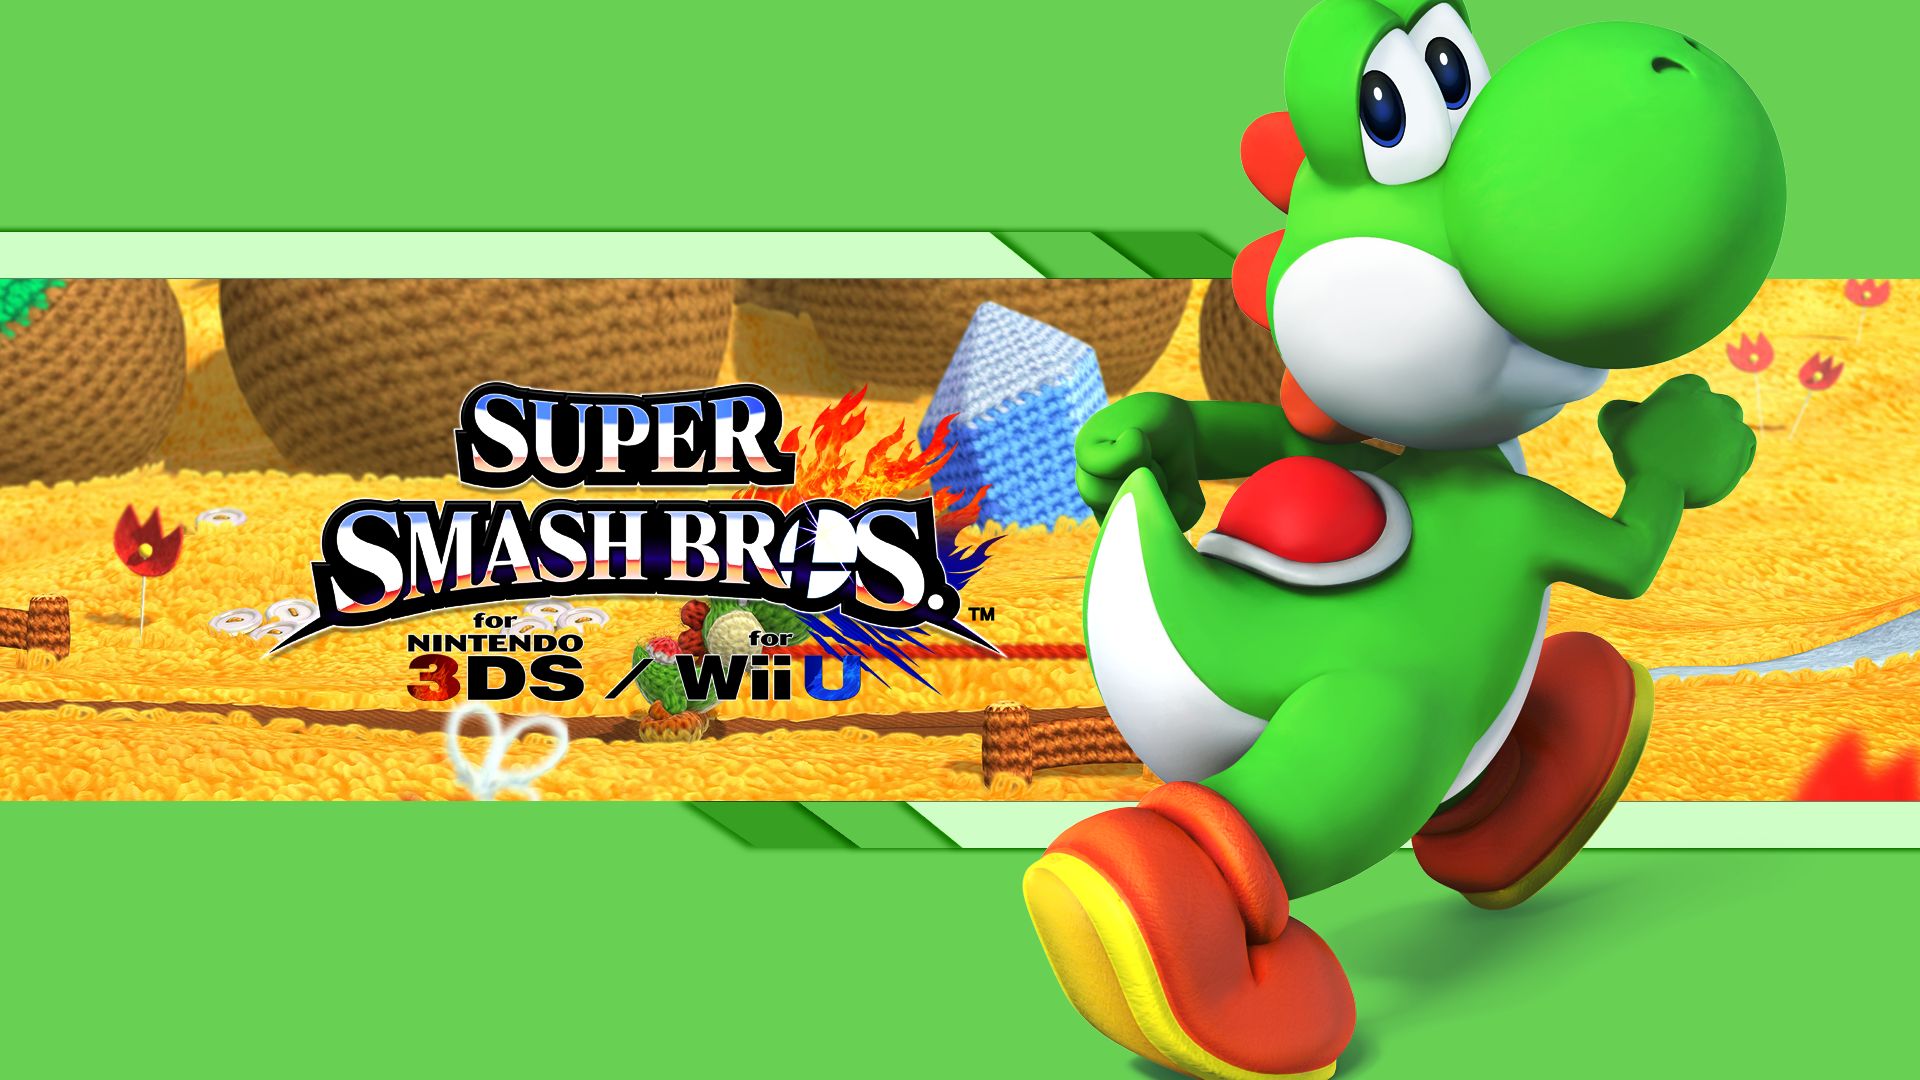 Скачать обои бесплатно Видеоигры, Йоши, Братья Супер Смэш, Super Smash Bros Для Nintendo 3Ds И Wii U картинка на рабочий стол ПК